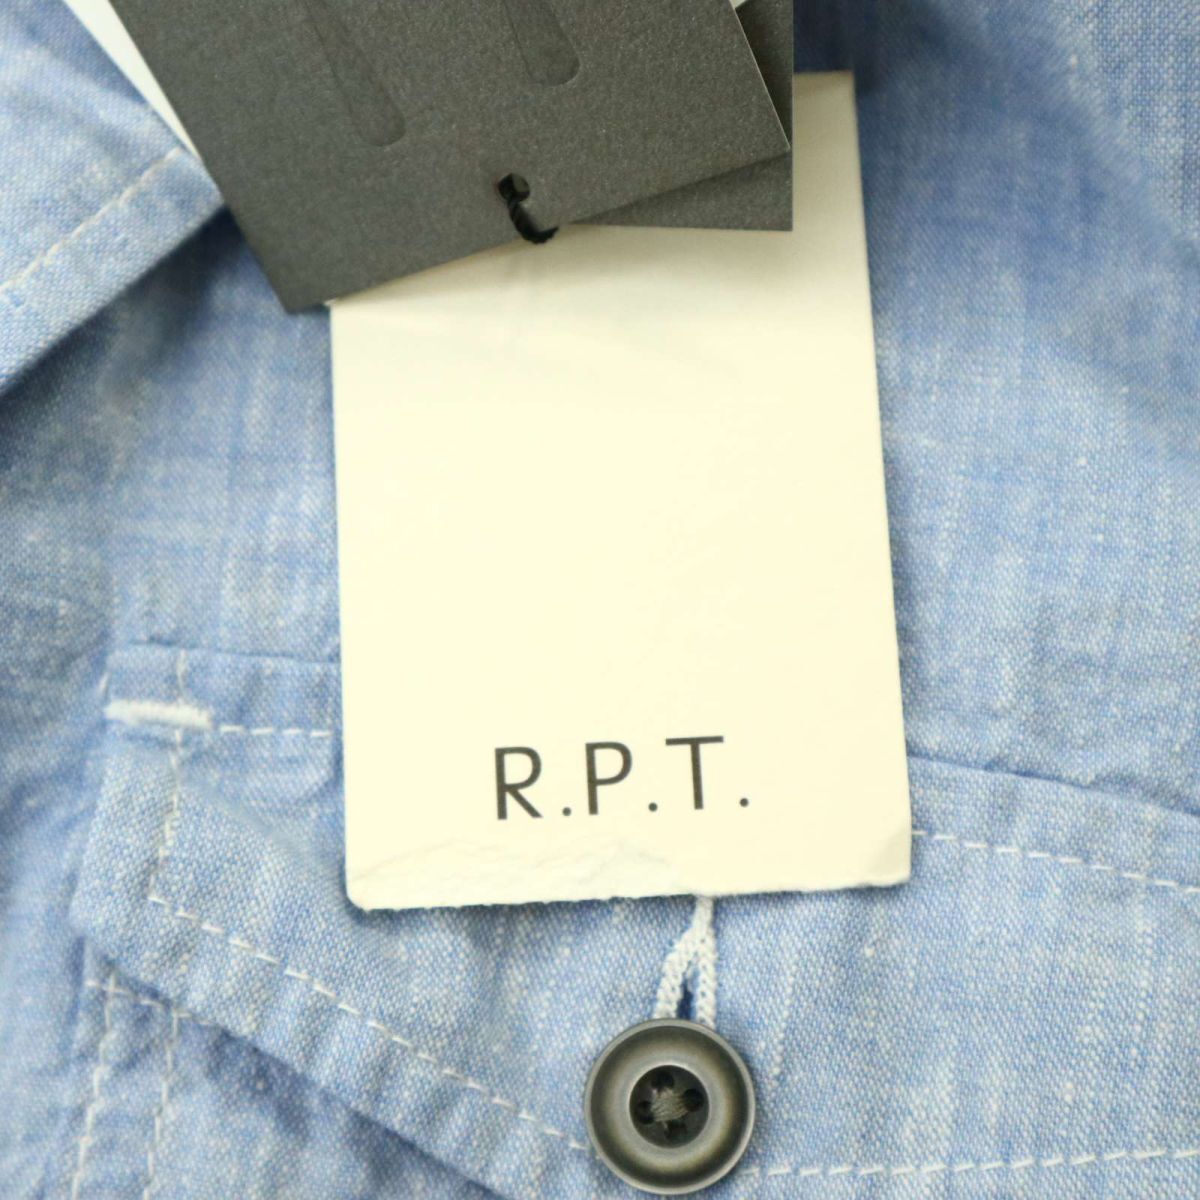 [ новый товар не использовался ] R.P.T RUPERT Rupert лен linen.7 минут рукав f-ti- автомобиль n пятно - рубашка work shirt Parker Sz.XL мужской A4T04448_4#A